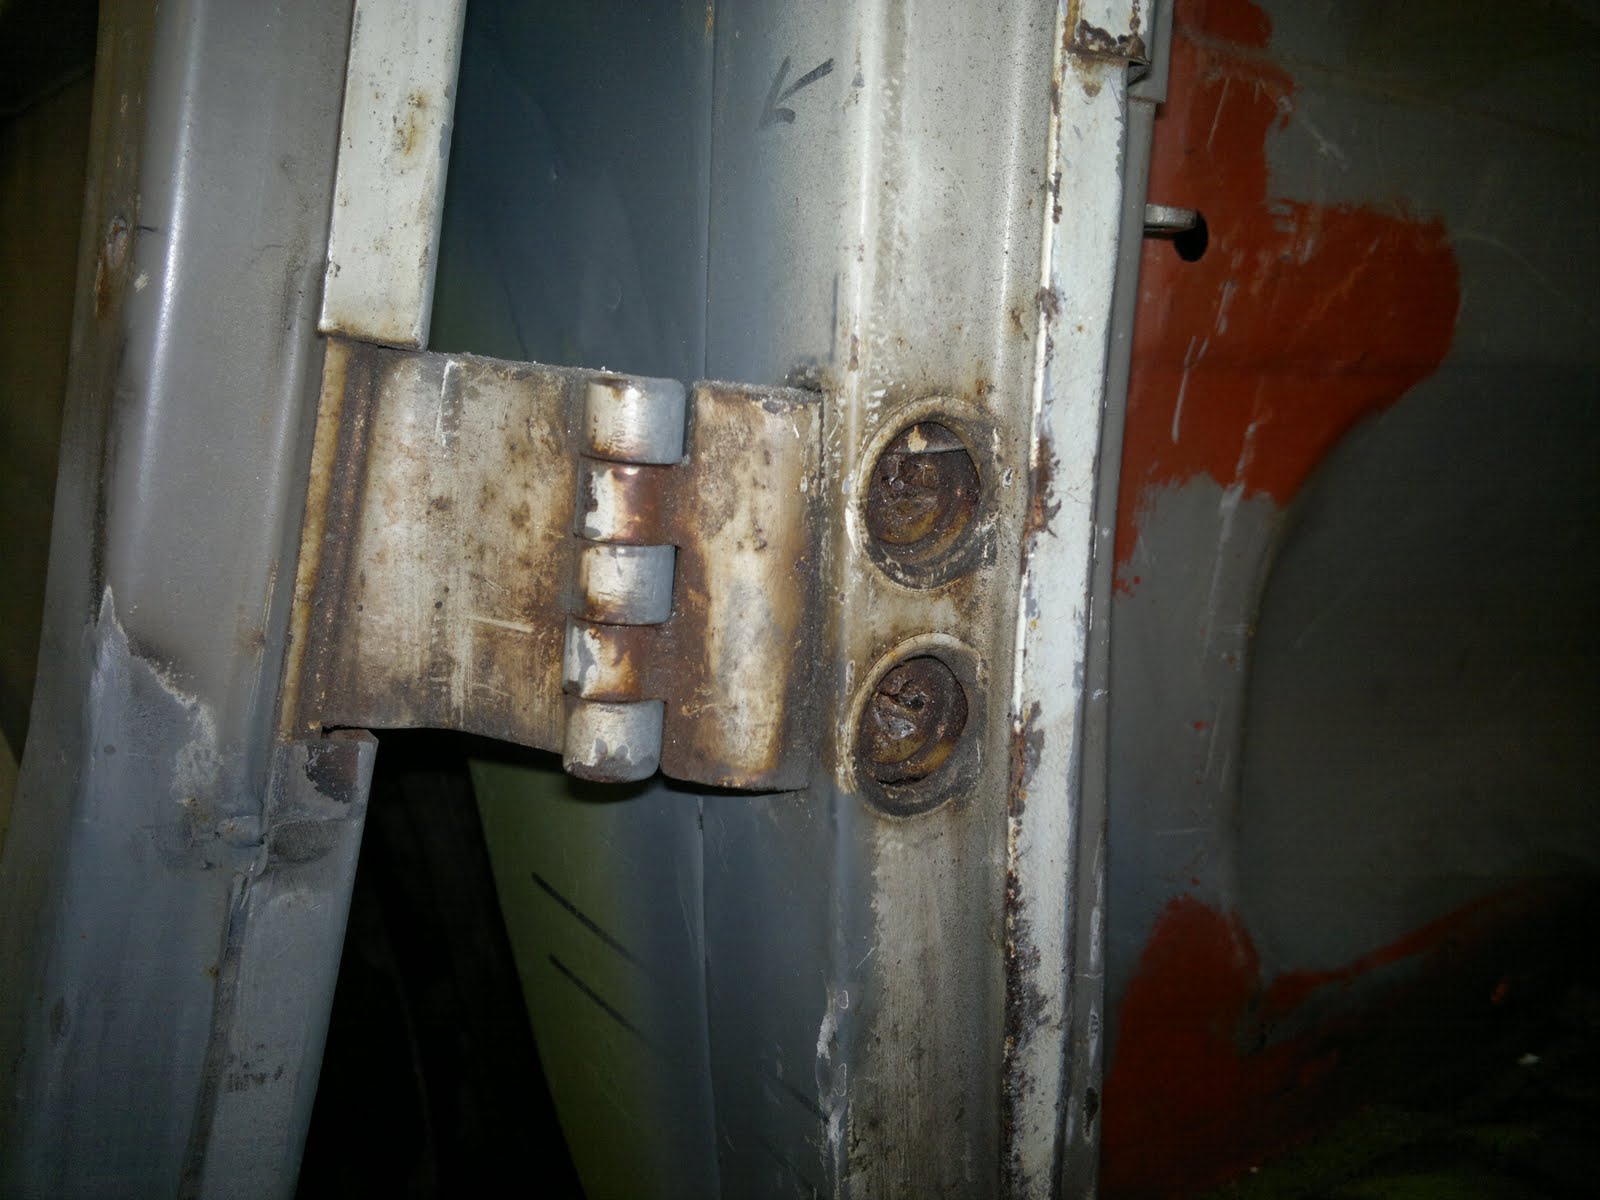 Pauls splitscreen van project: Removing a Rusted Cargo Door Hinge Bolt